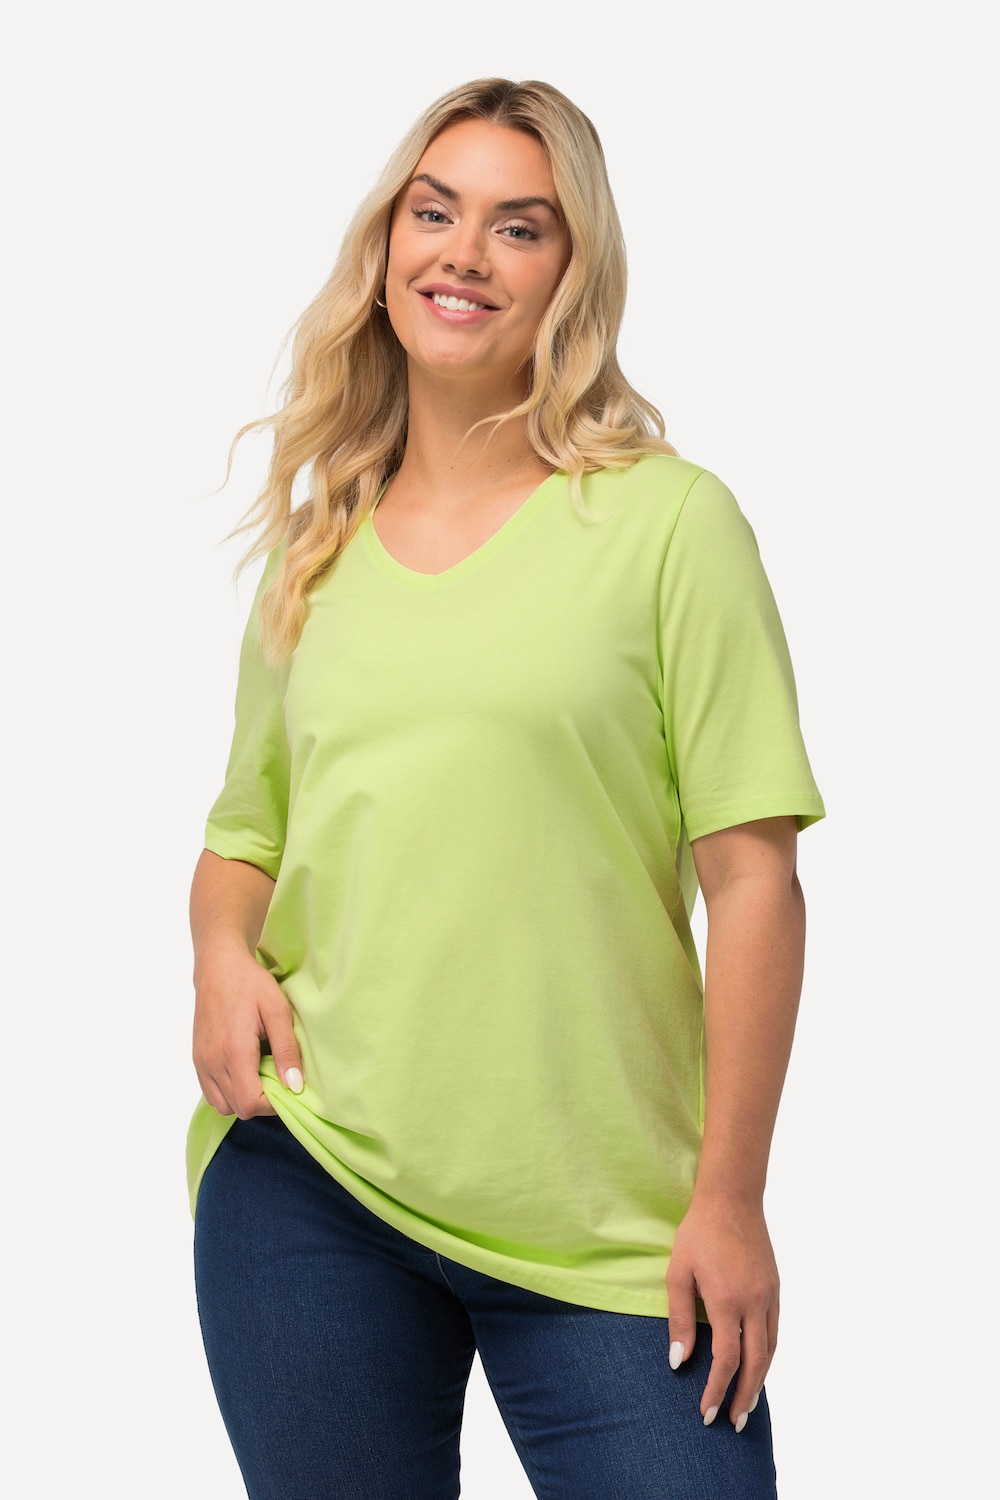 Grote Maten T-shirt, Dames, groen, Maat: 54/56, Katoen, Ulla Popken